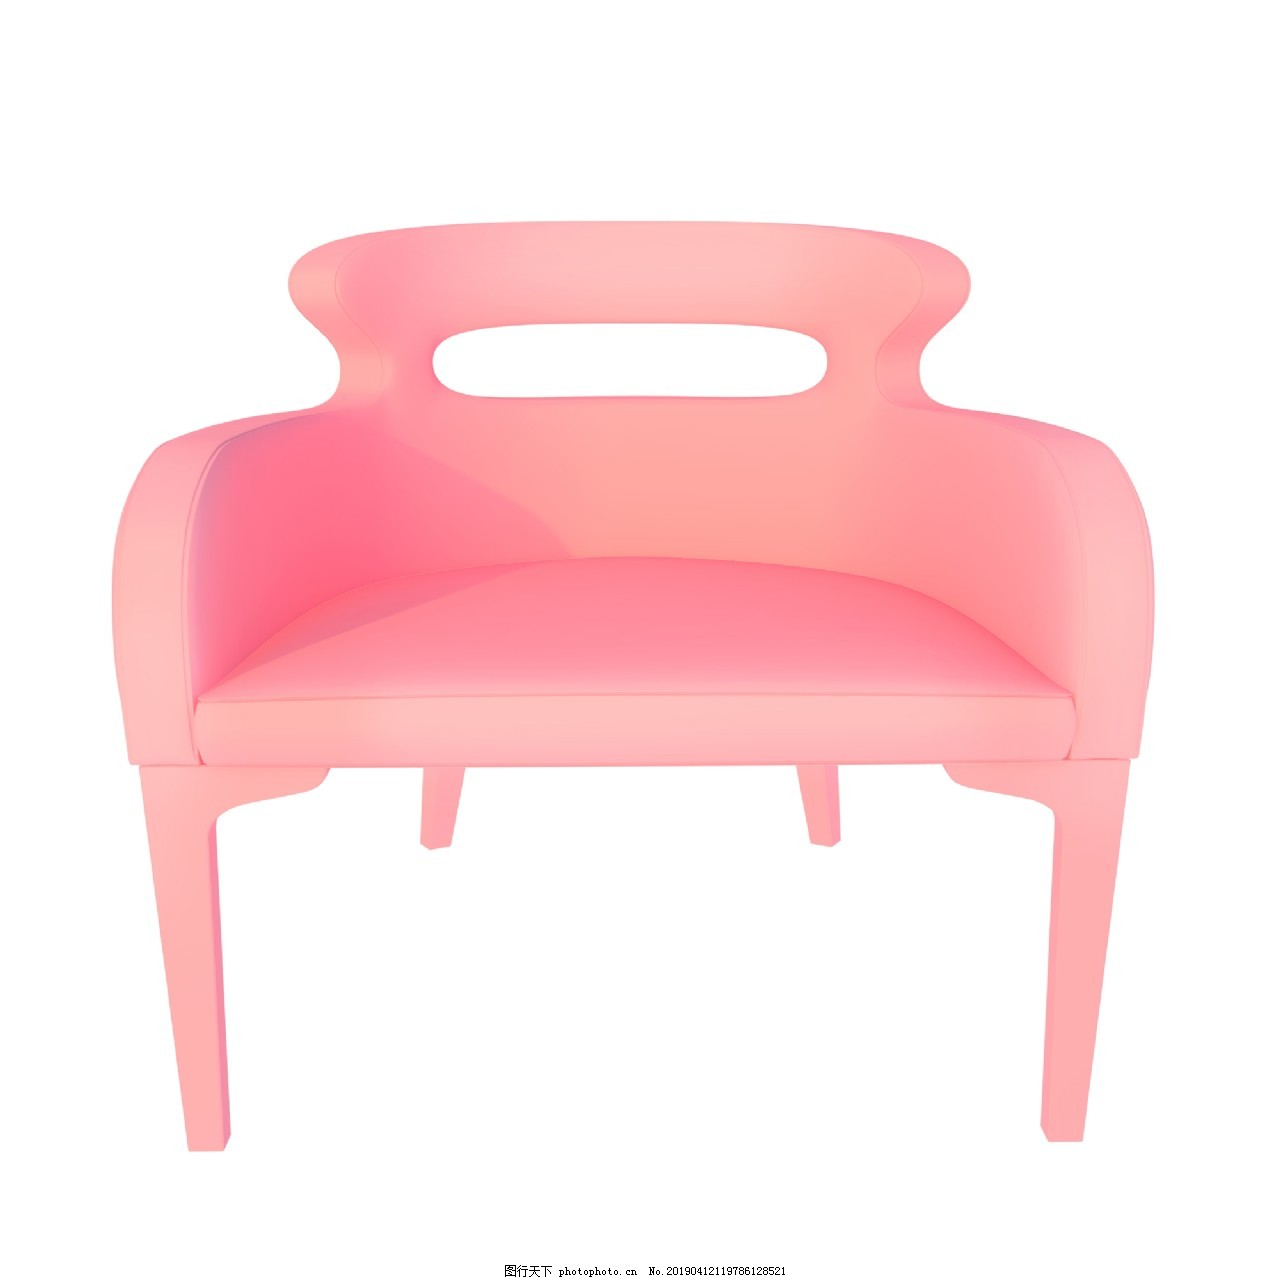 ‘~粉色椅子图片_装饰图案_平面创作元素-  ~’ 的图片